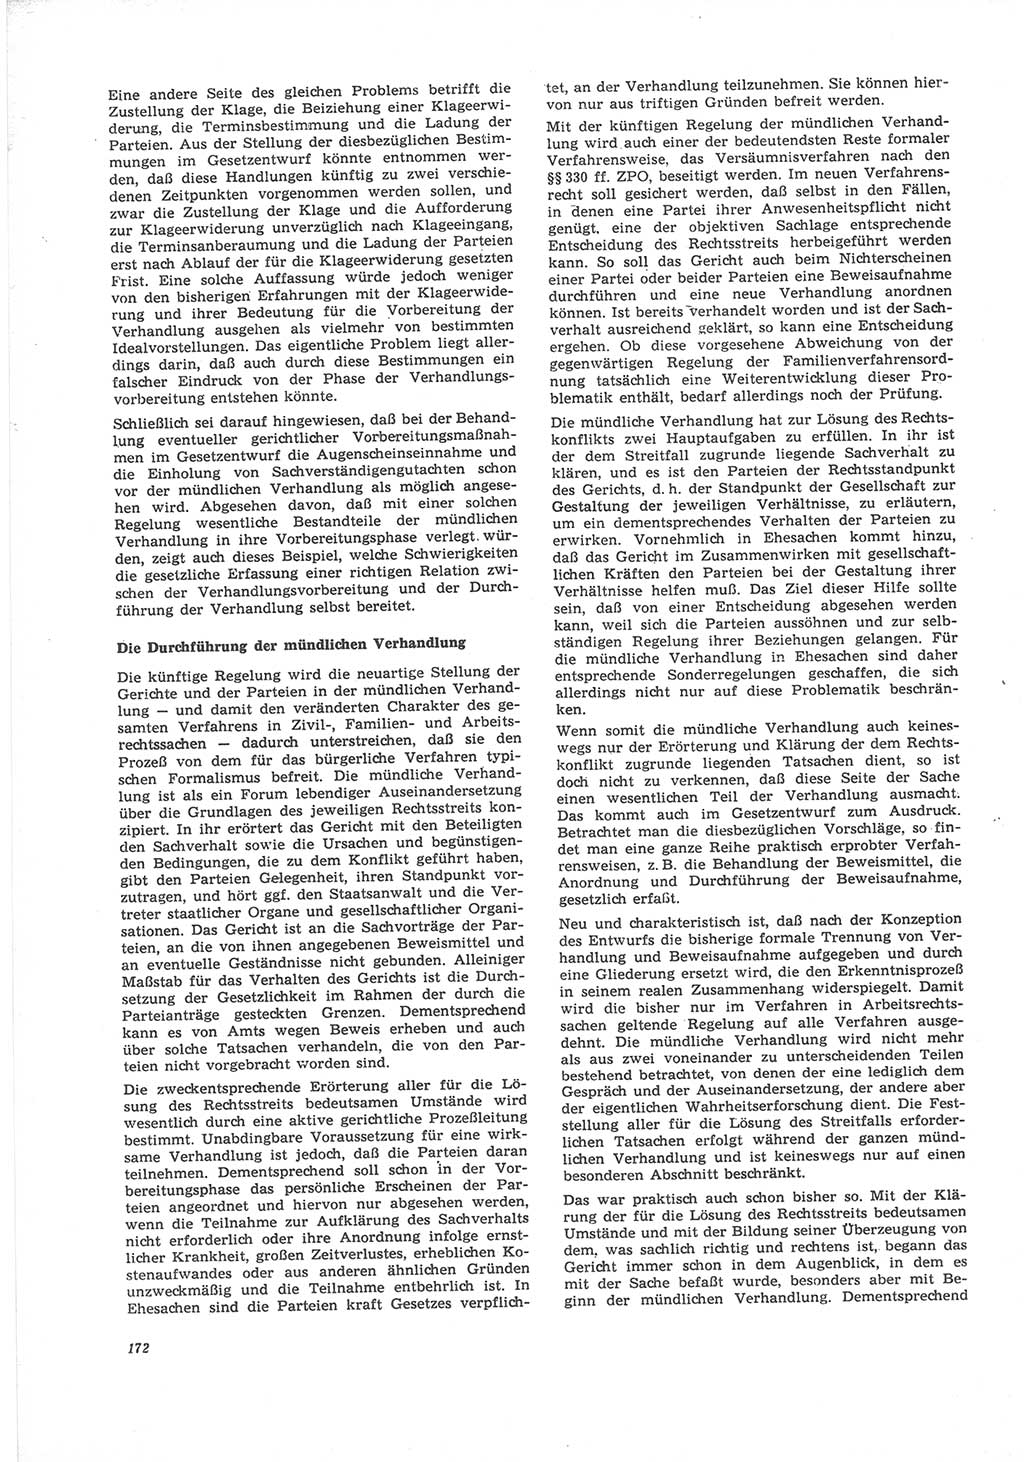 Neue Justiz (NJ), Zeitschrift für Recht und Rechtswissenschaft [Deutsche Demokratische Republik (DDR)], 24. Jahrgang 1970, Seite 172 (NJ DDR 1970, S. 172)